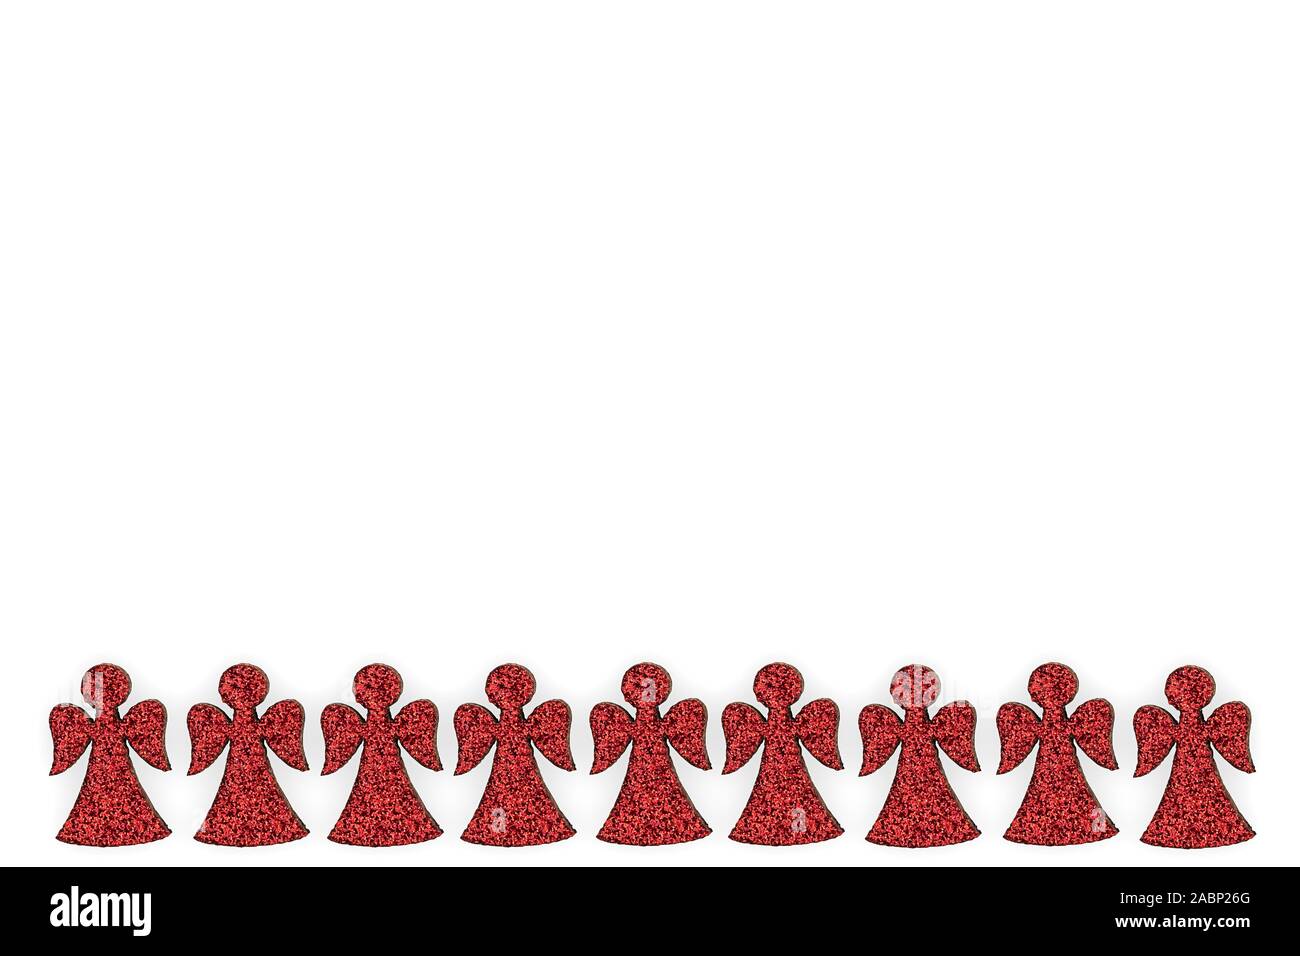 Gli angeli di legno ricoperta di glitter rosso isolato su sfondo bianco Foto Stock